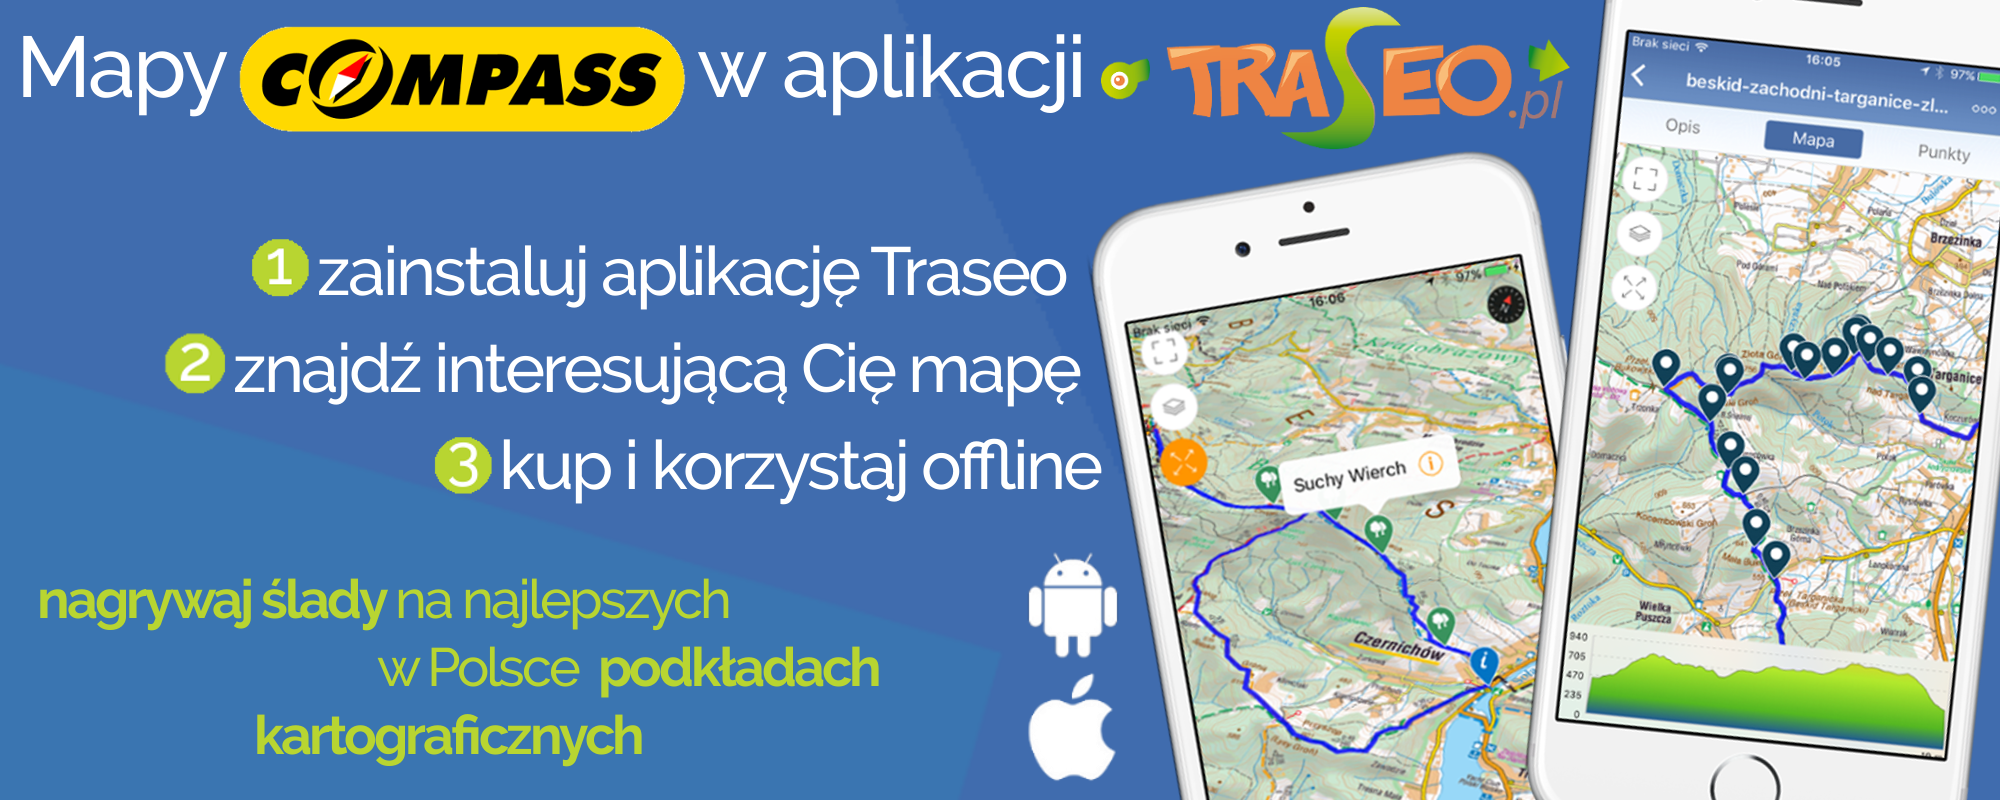 Tradycyjne mapy w aplikacji mobilnej dla aktywnych Compass i Traseo łączą siły!